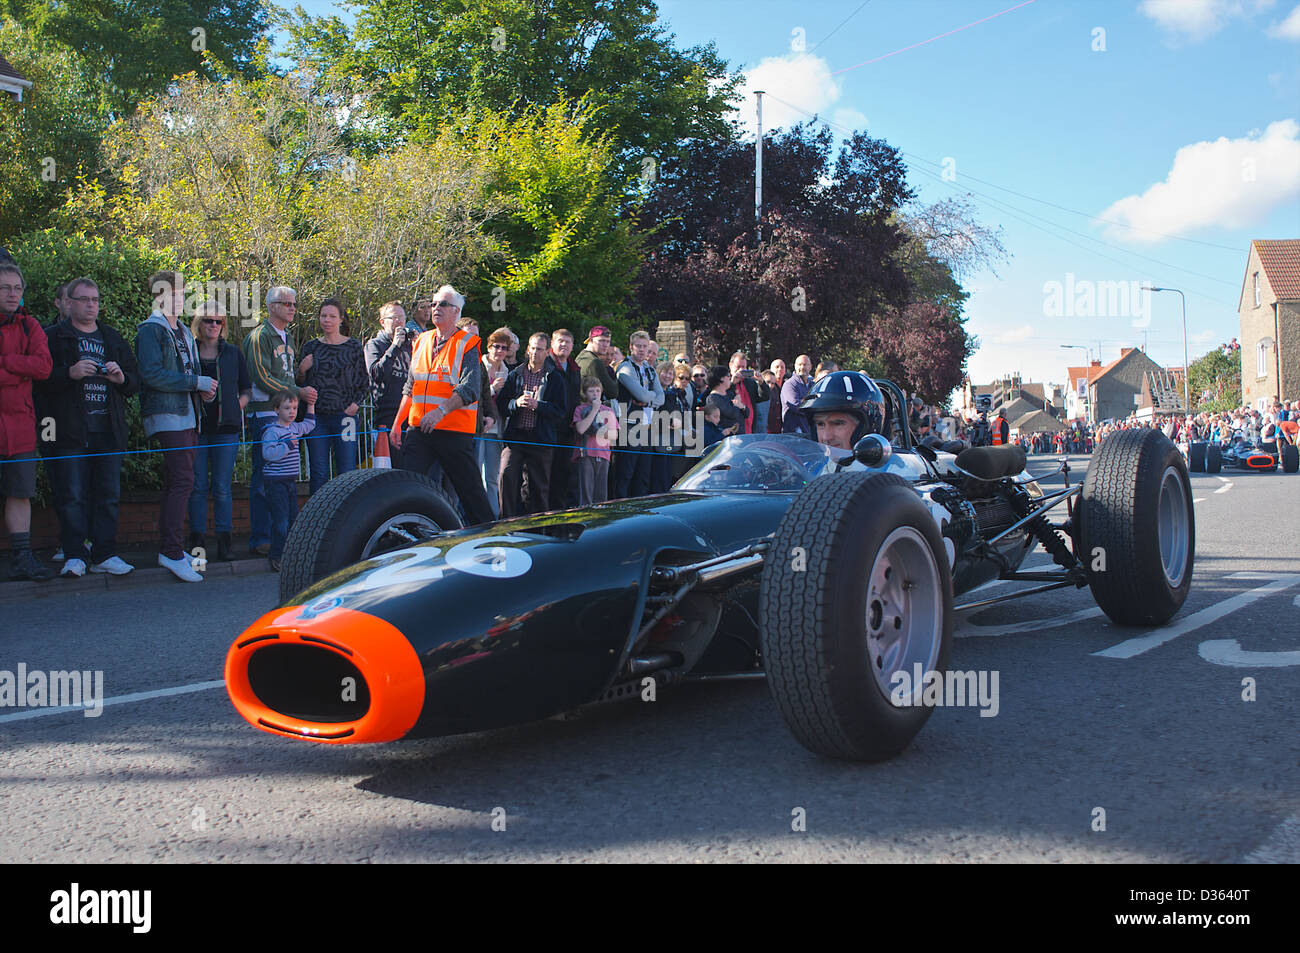 Damon Hill entraîne une vieille formule 1 BRM des années 1960 au cours de la célébration du 50e anniversaire de GRE en Bourne, Lincolnshire Banque D'Images